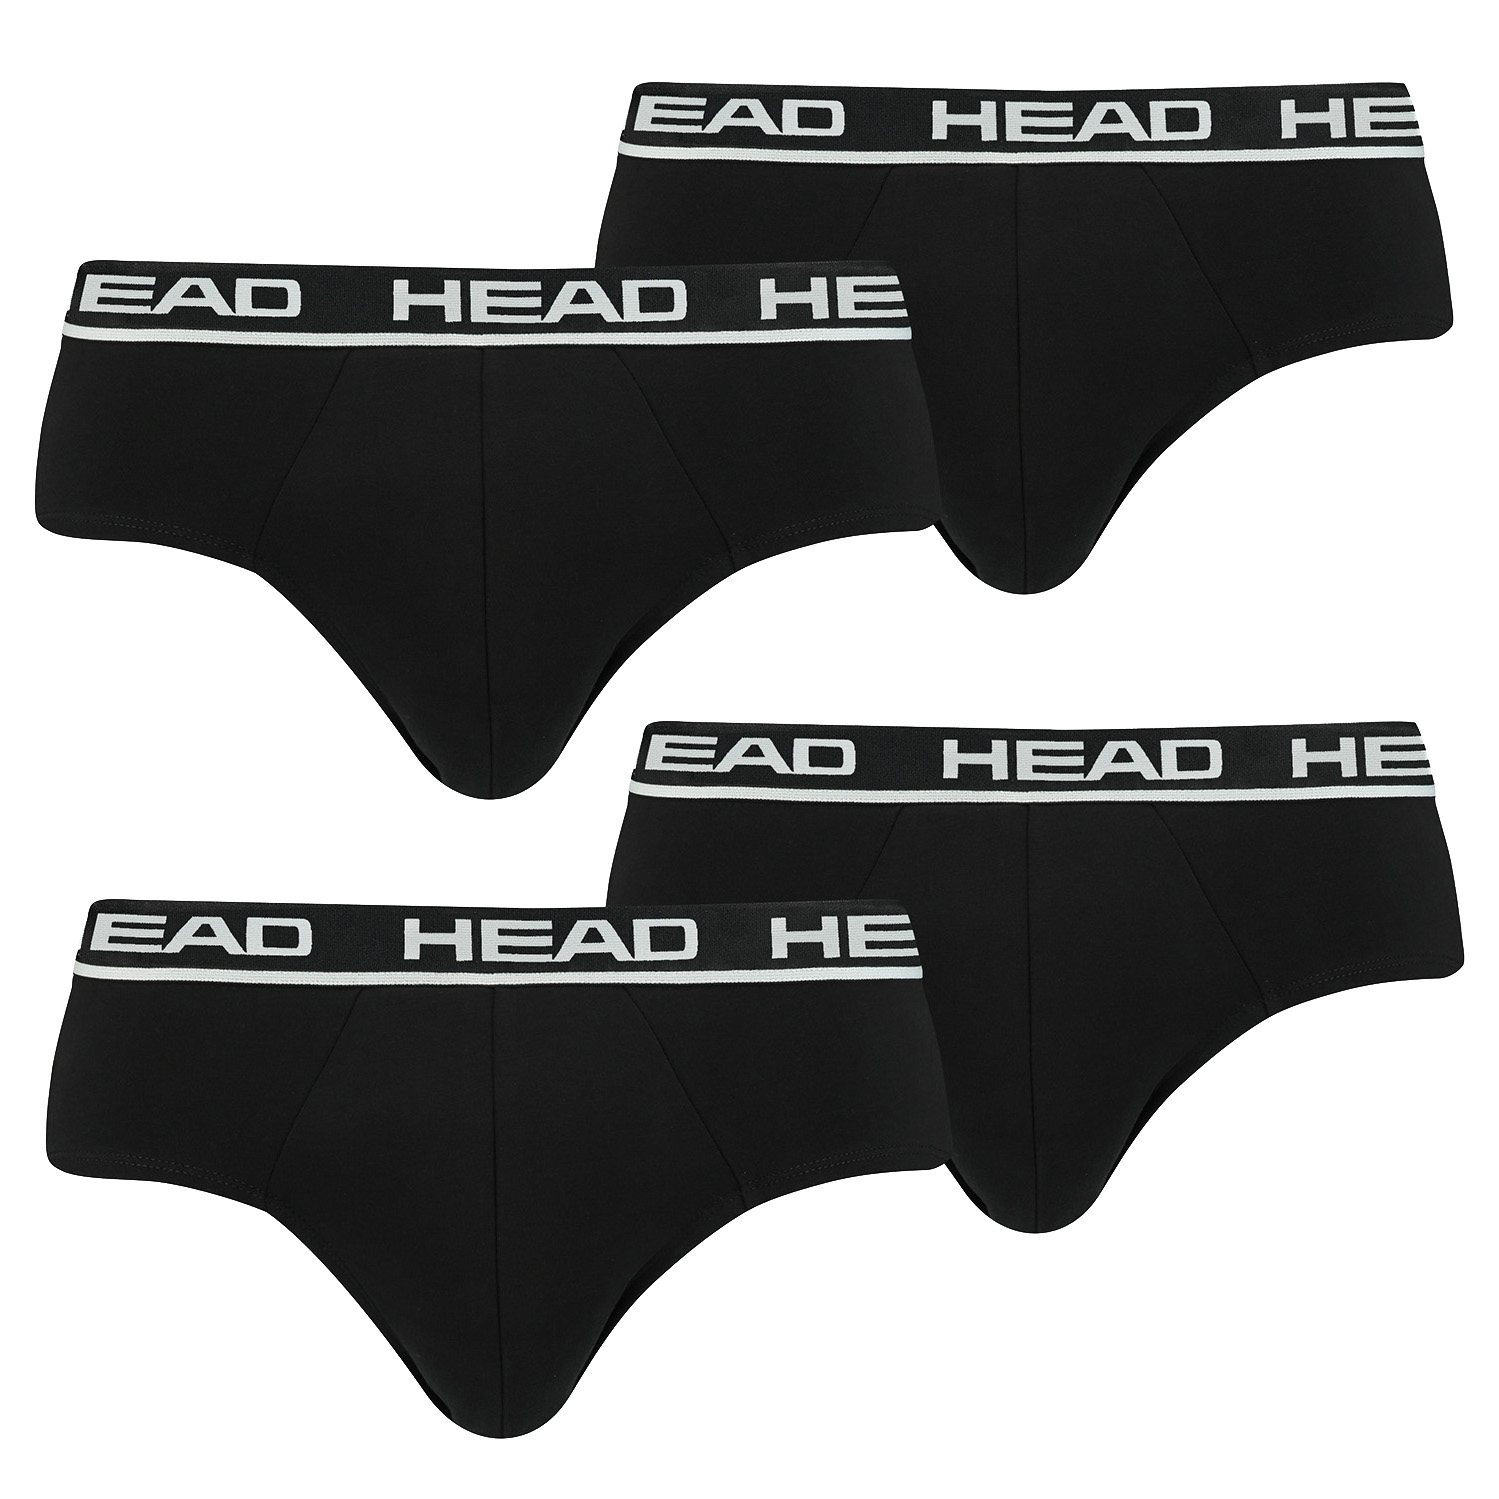 HEAD Herren Basic Brief Pant Slip Unterwäsche Unterhose 4 er Pack , Farbe:002 - Black, Bekleidungsgröße:L